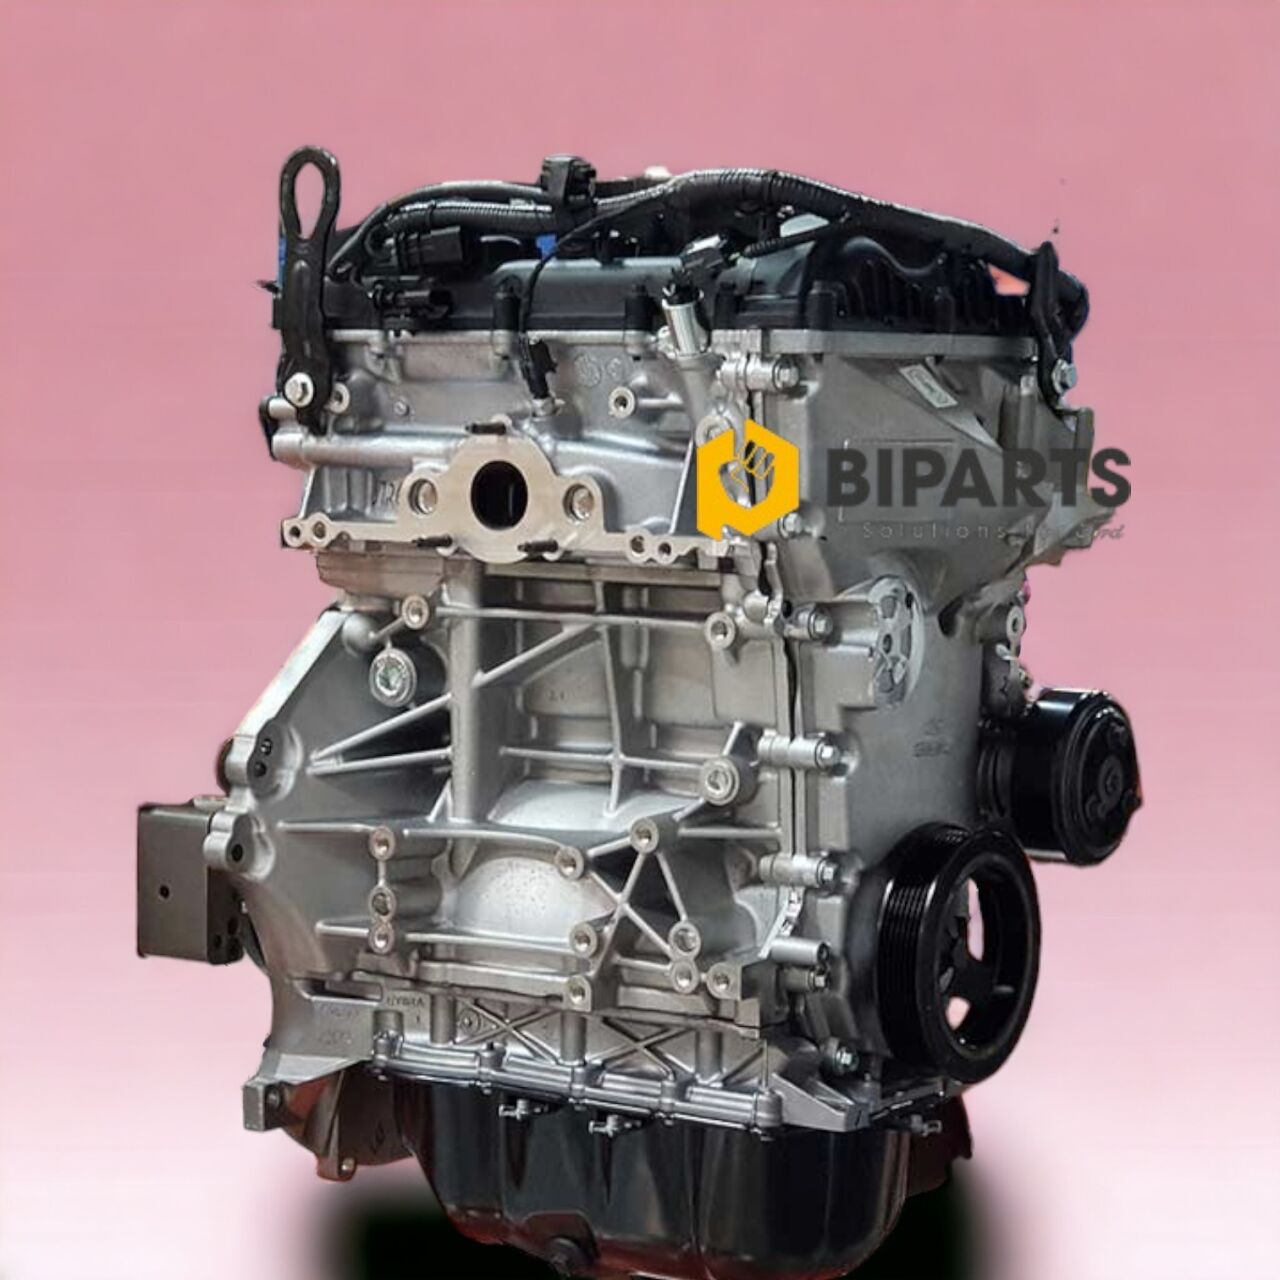 Dragon serisi, Ford otomobil serisindeki mevcut motorların bazılarının yerini alması beklenen 1.2 L ve 1.5 L, 3 silindirli motorlardan oluşuyor.